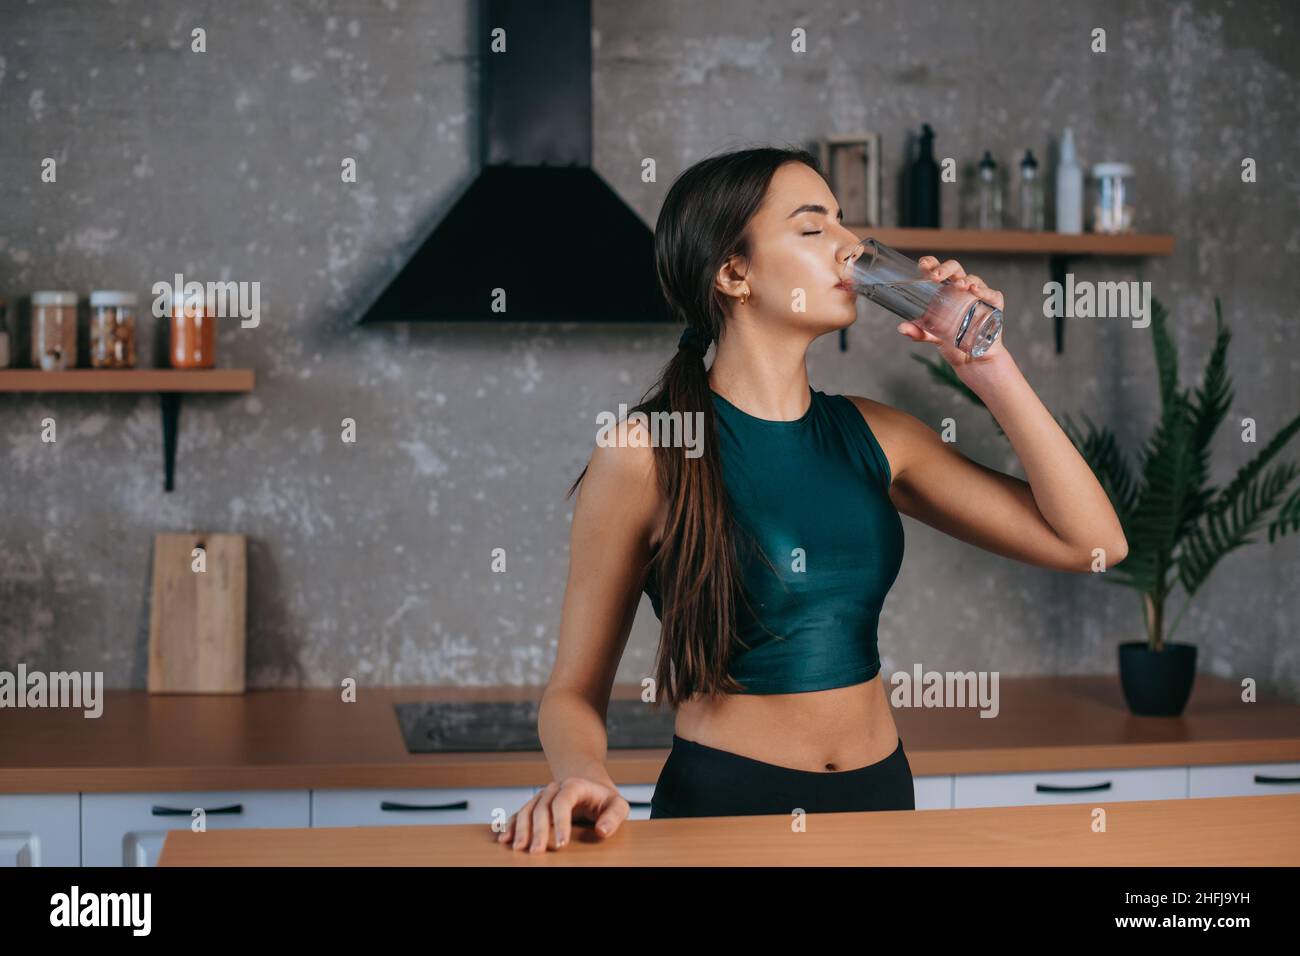 Femme caucasienne debout dans la cuisine à la maison boire de l'eau douce après avoir fait l'entraînement.Régime, mode de vie sain, concept de perte de poids.Concept de beauté Banque D'Images